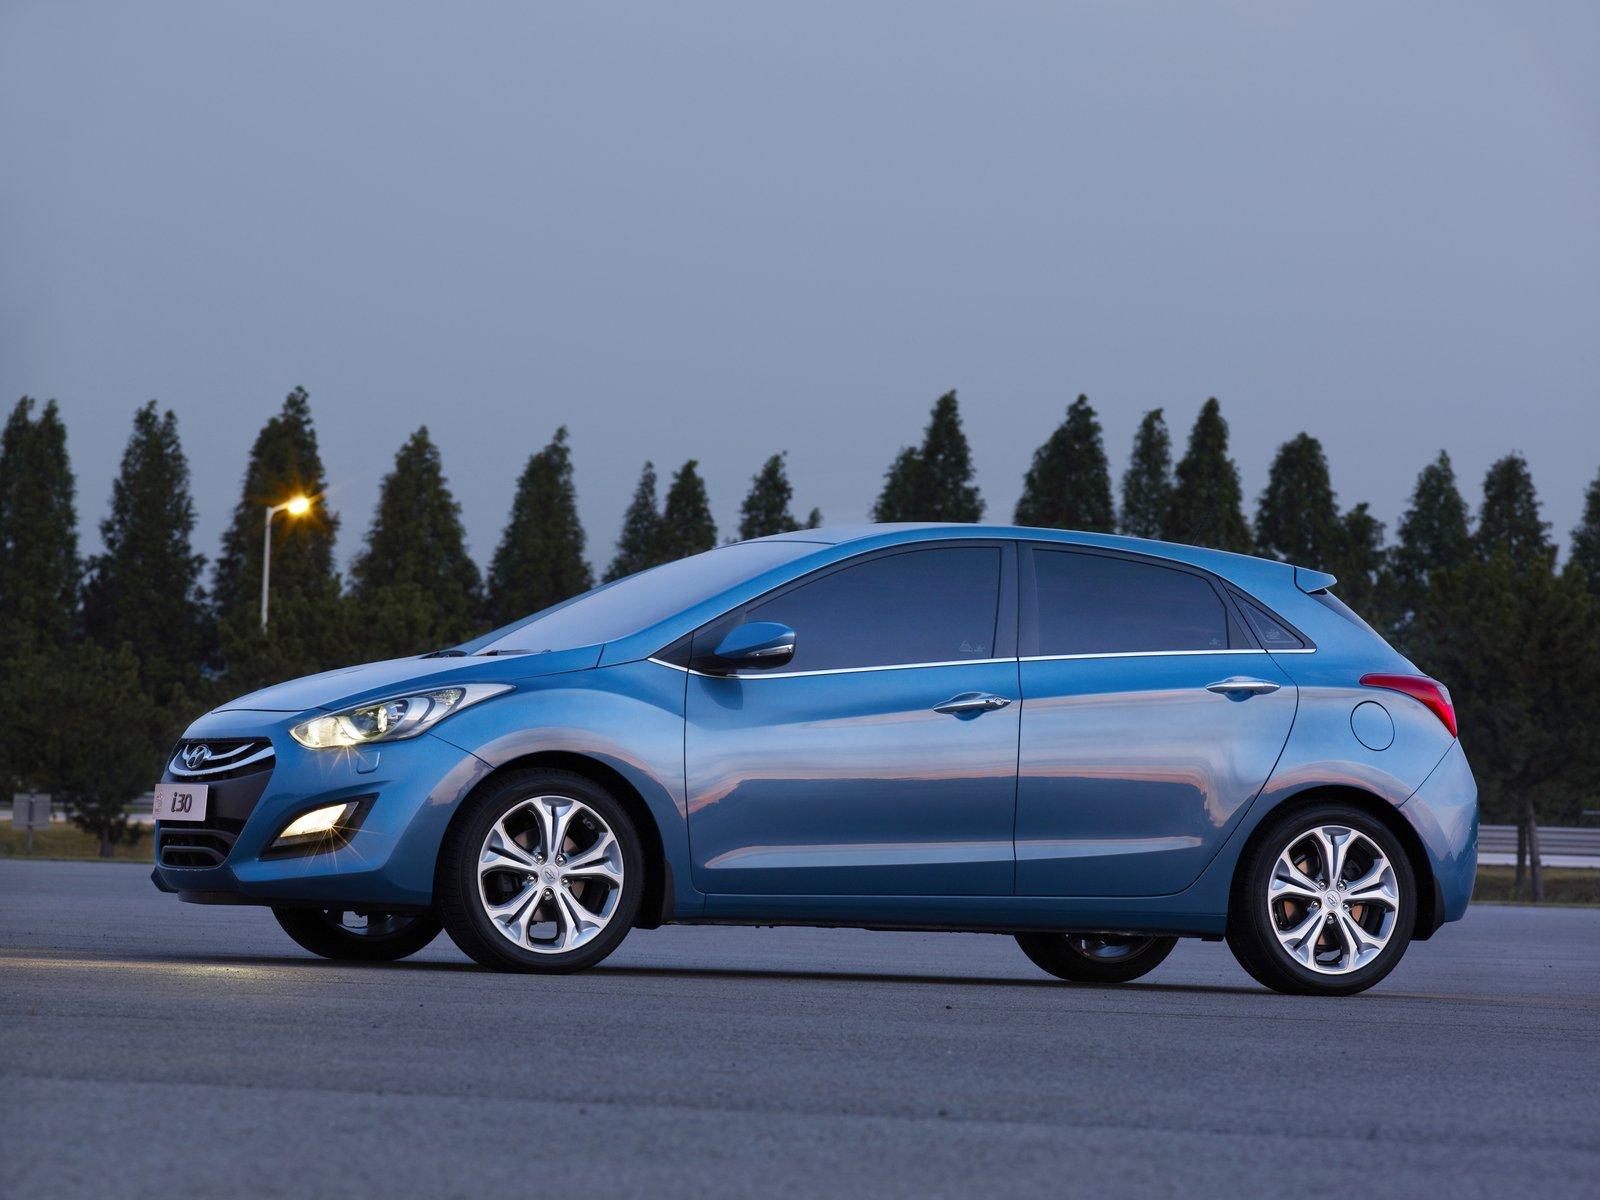 Αυτό είναι το Hyundai i30 2012 Autoblog.gr